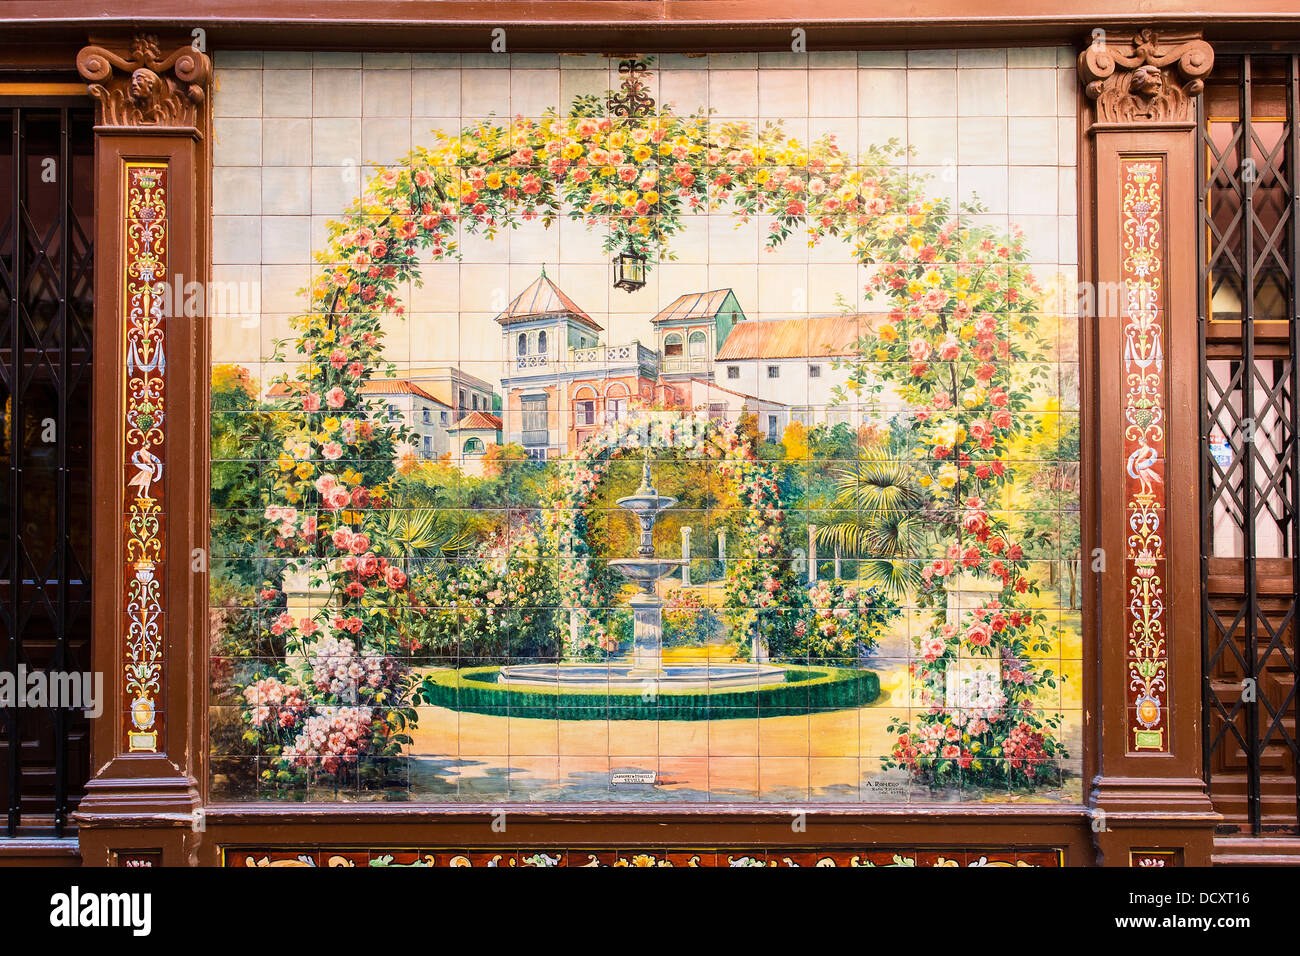 Madrid, Mosaic decoration Stock Photo